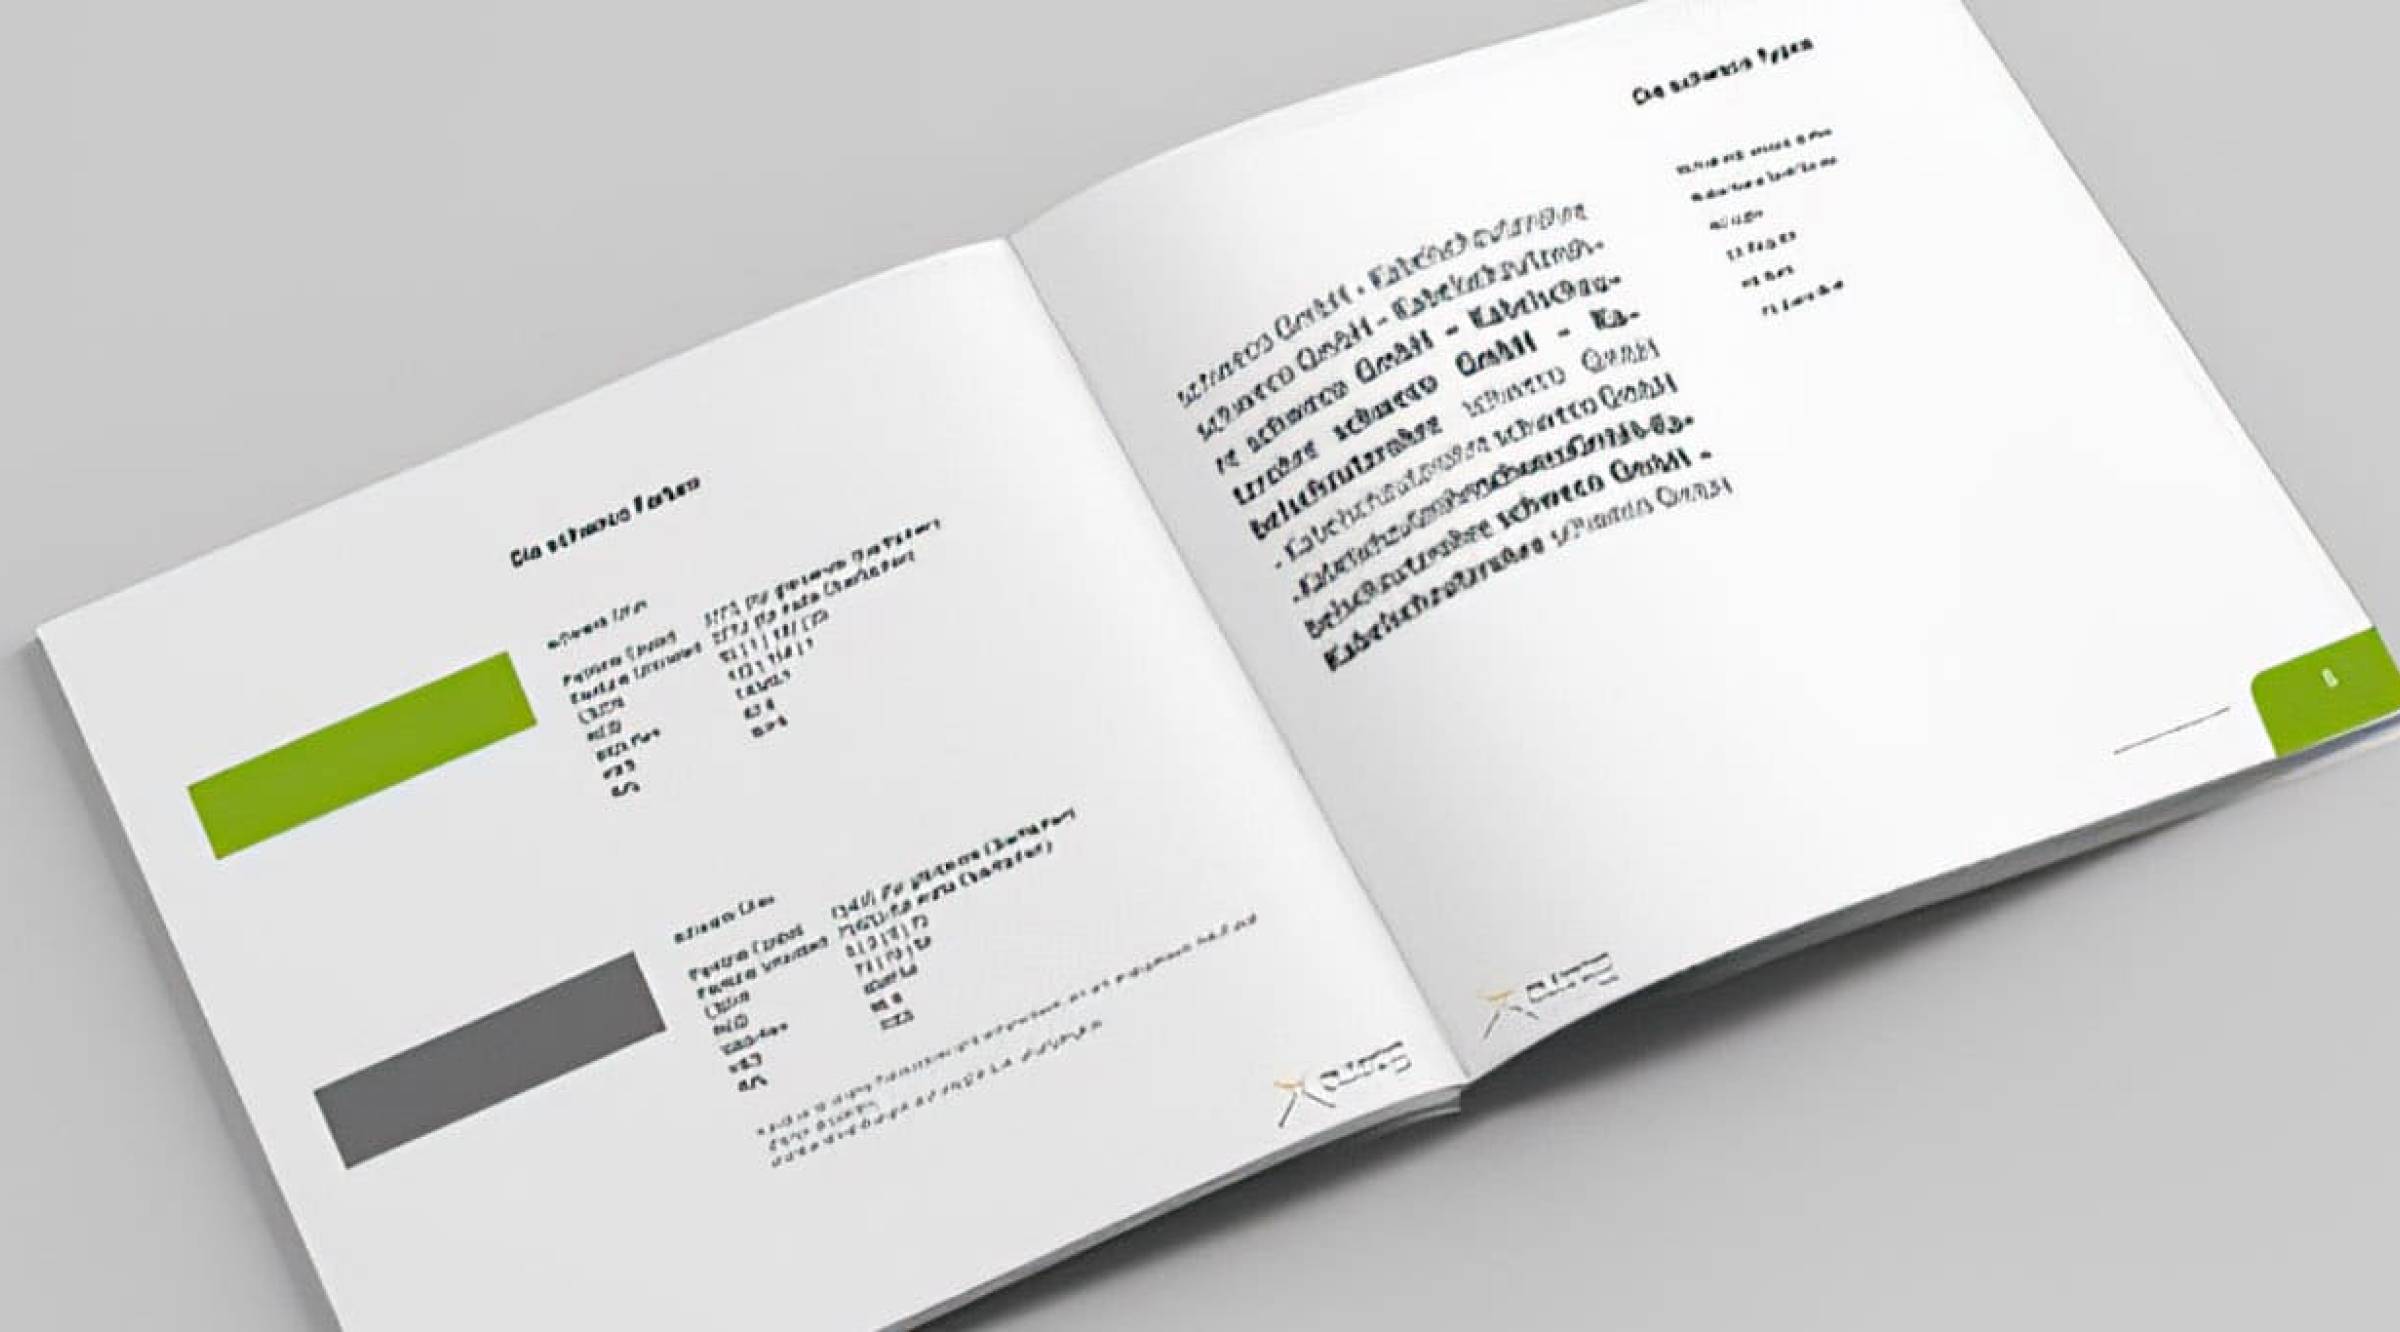 Aufbau Corporate Design Guide der schweco GmbH